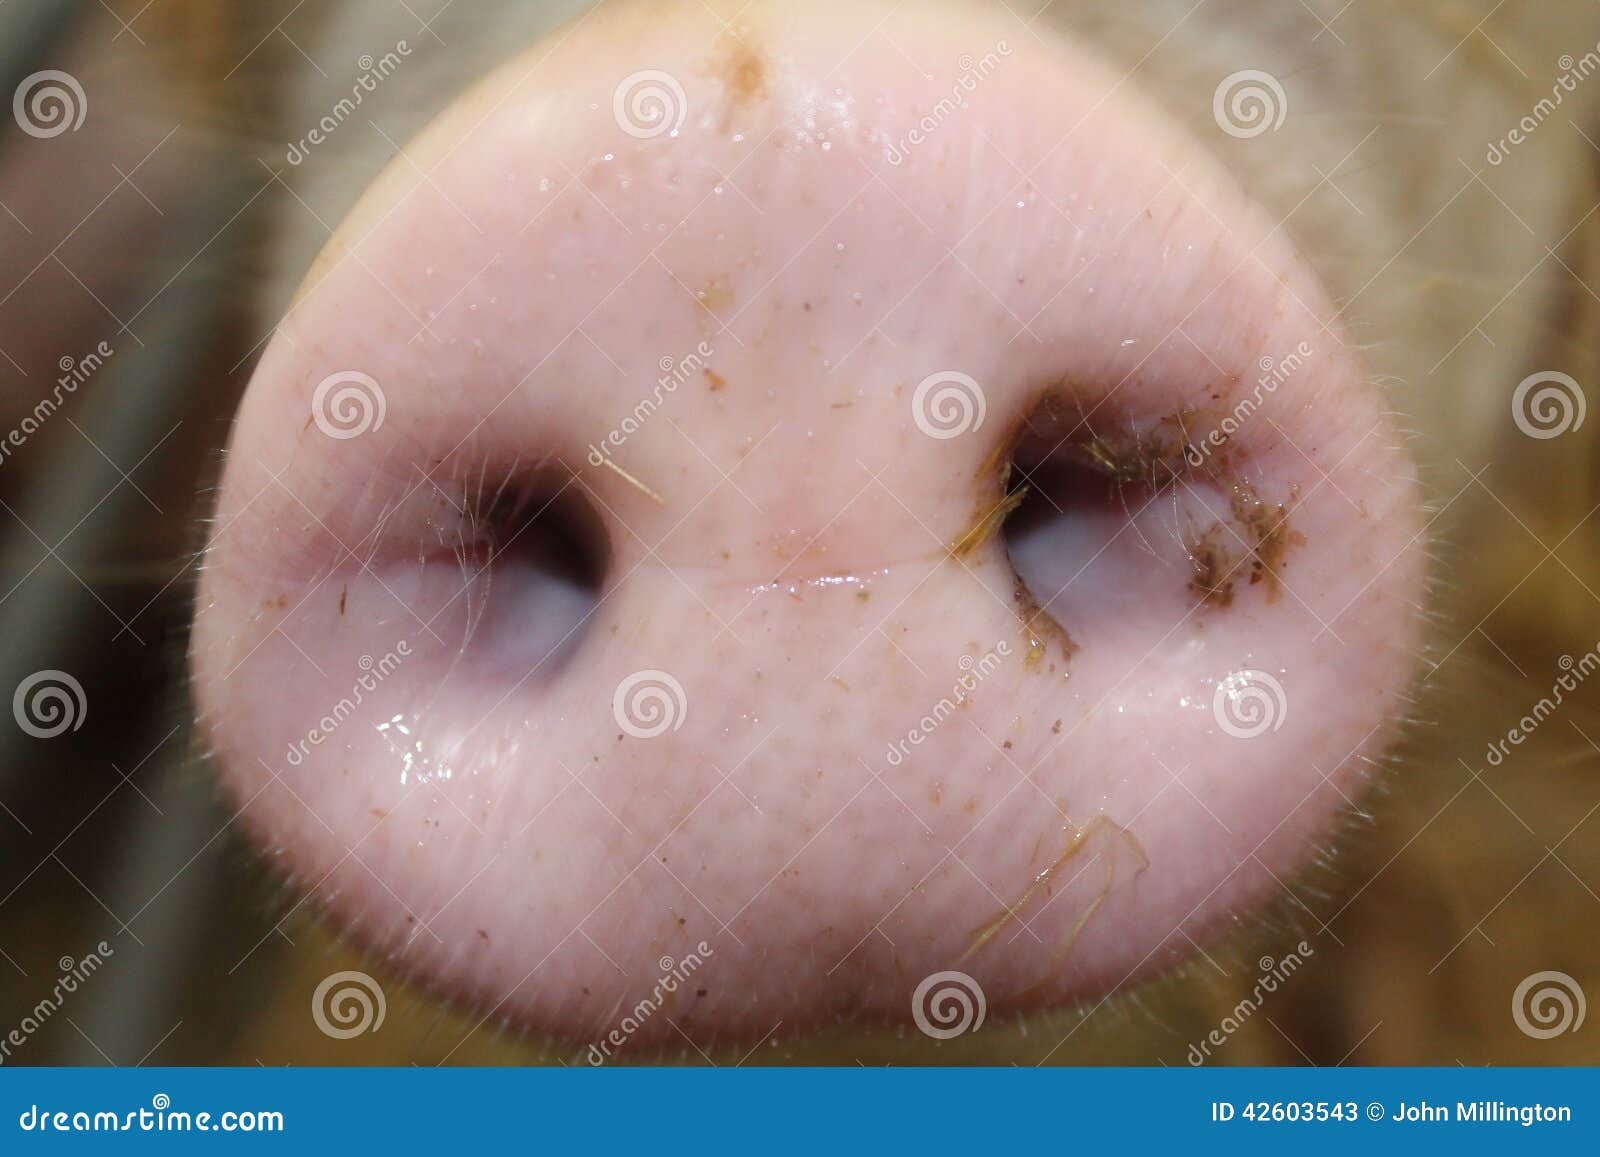 Świniowata dysza. Zamknięty widok świni dysza